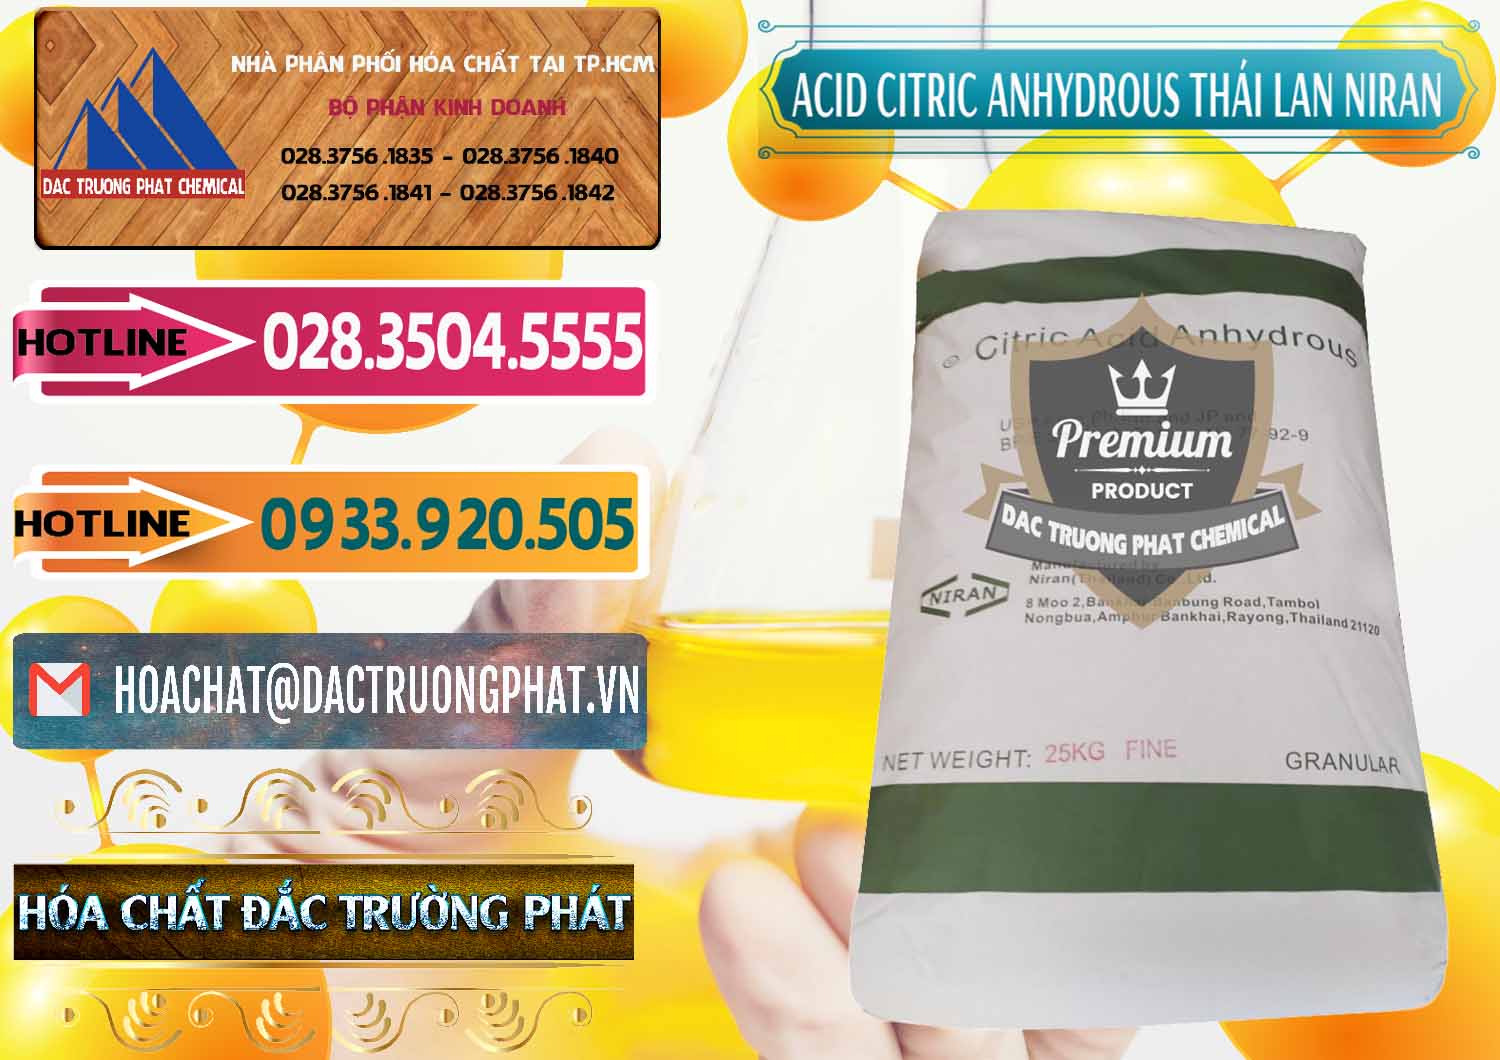 Cty chuyên phân phối & bán Acid Citric - Axit Citric Anhydrous - Thái Lan Niran - 0231 - Nơi chuyên bán ( phân phối ) hóa chất tại TP.HCM - dactruongphat.vn